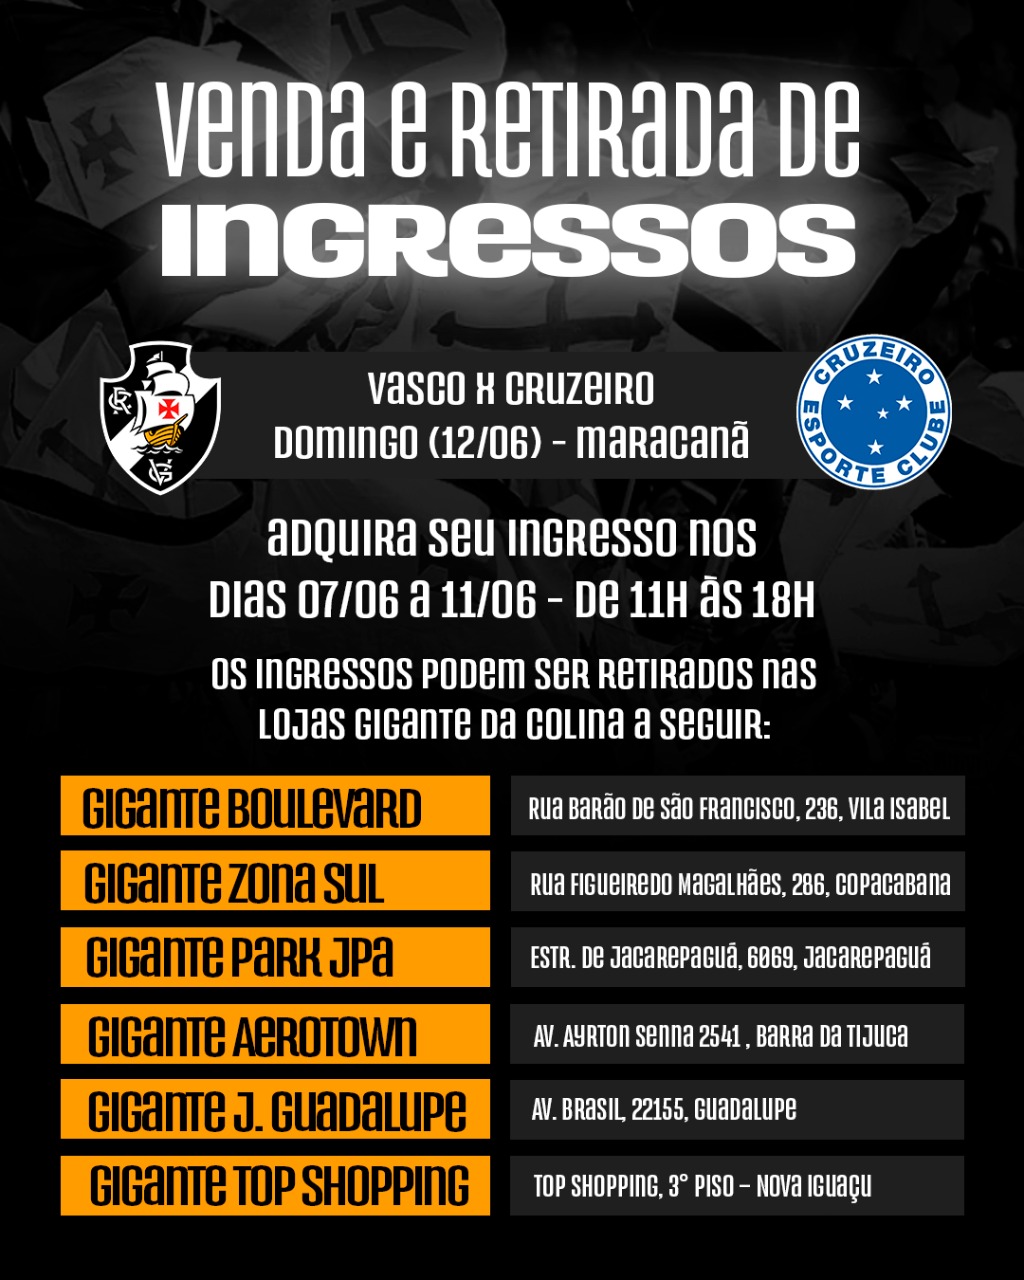 Informações sobre ingressos para Vasco x Cruzeiro – Vasco da Gama